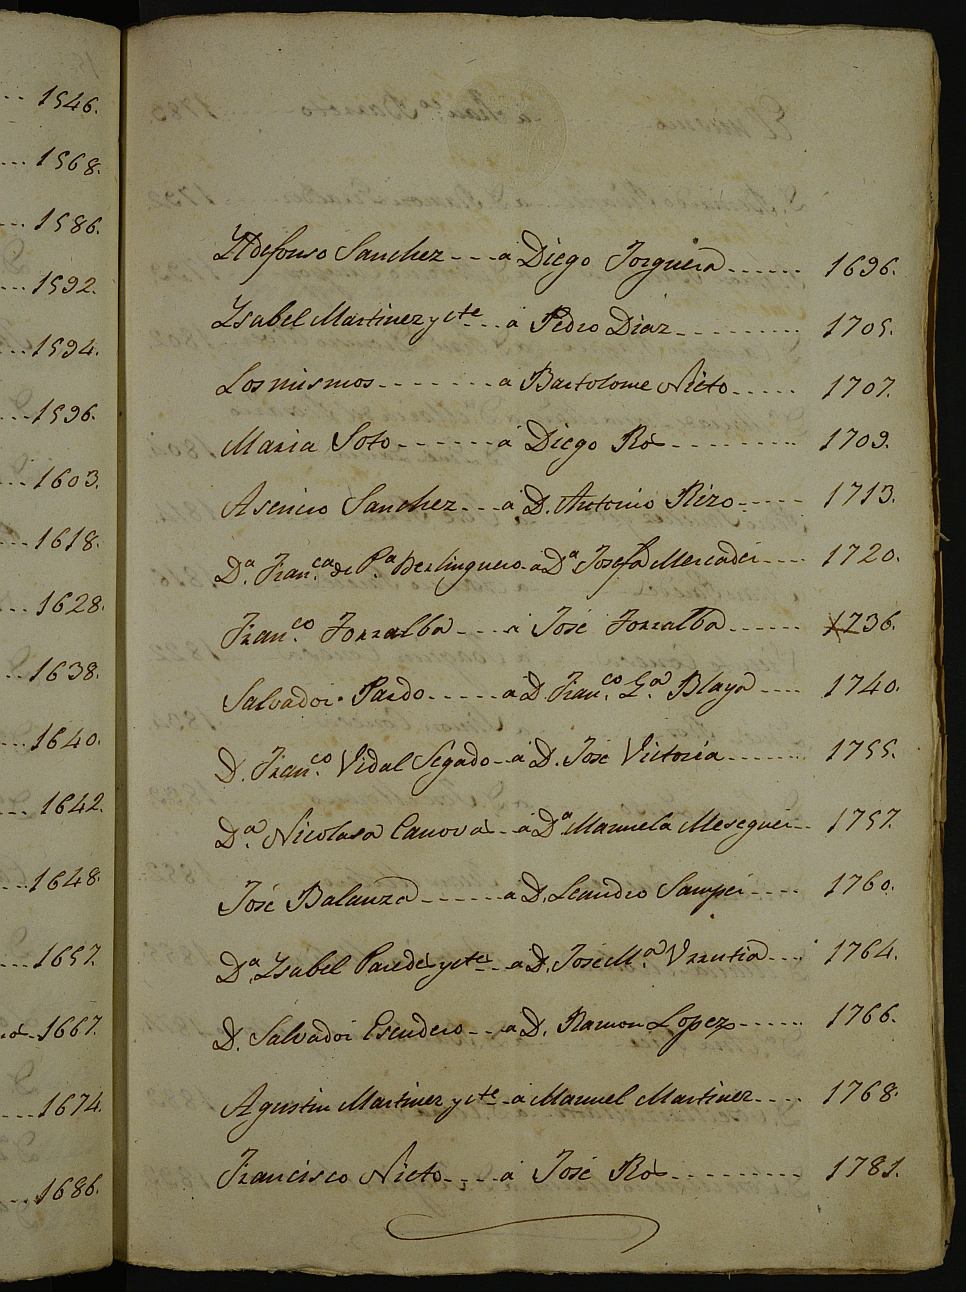 Registro de Bernardino Alcaraz, Cartagena. Tomo I. Año 1858.